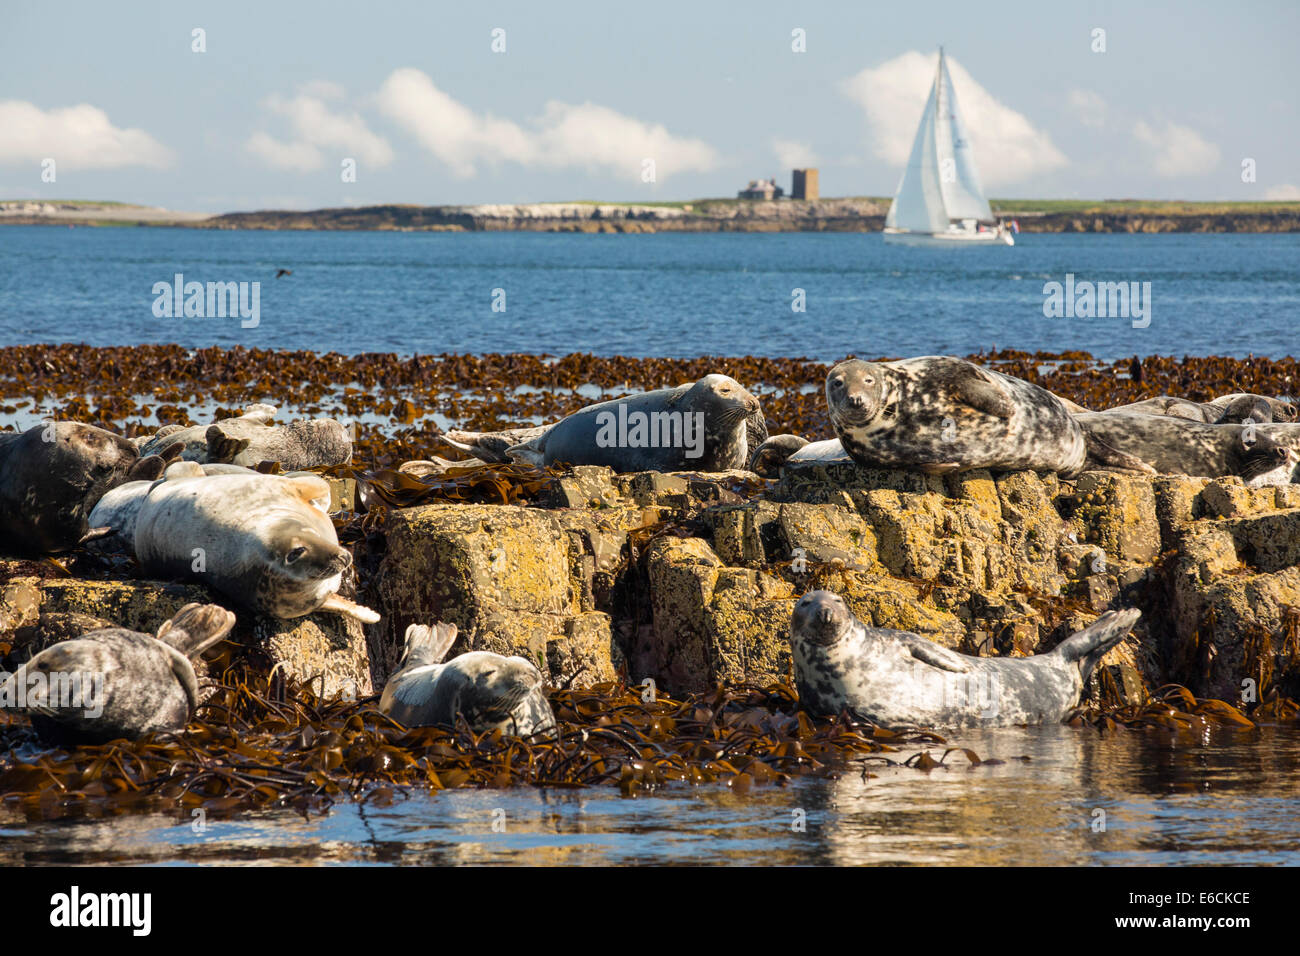 Les phoques communs, Phoca vitulina, sur l'îles Farne, Northumberland, Angleterre, avec un bateau à voile derrière. Banque D'Images